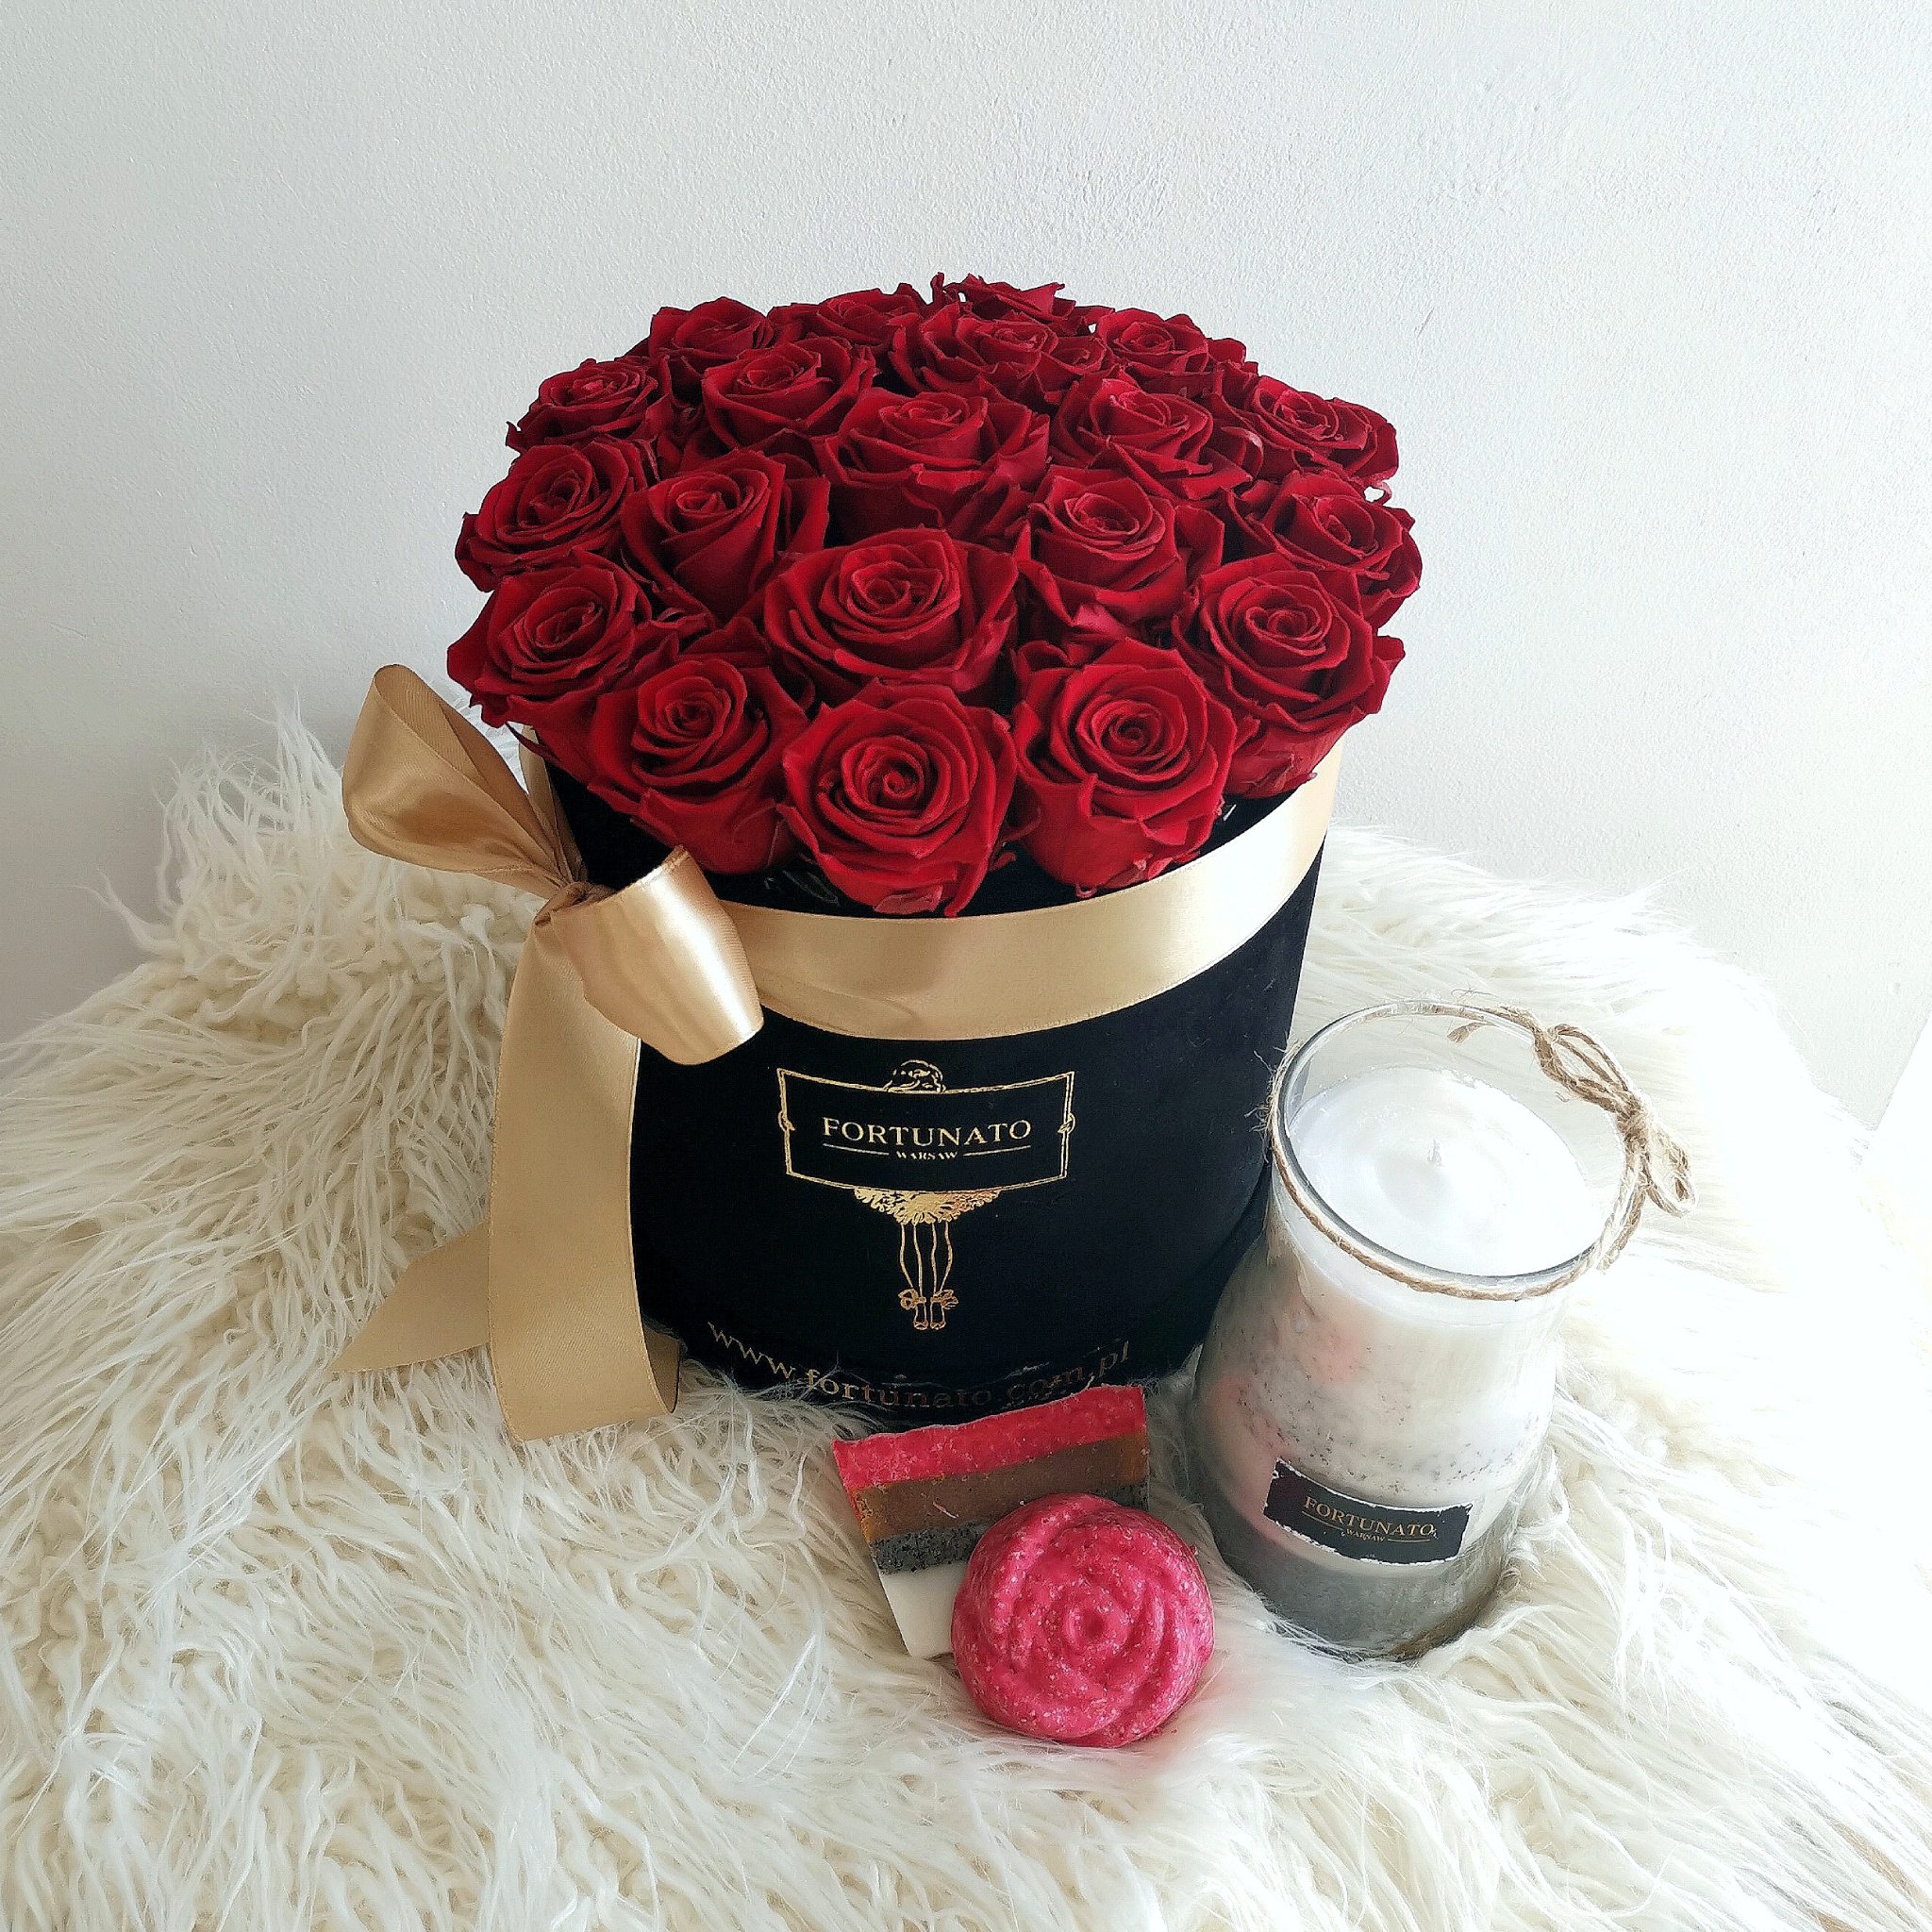 Średni box z różami i upominkiem